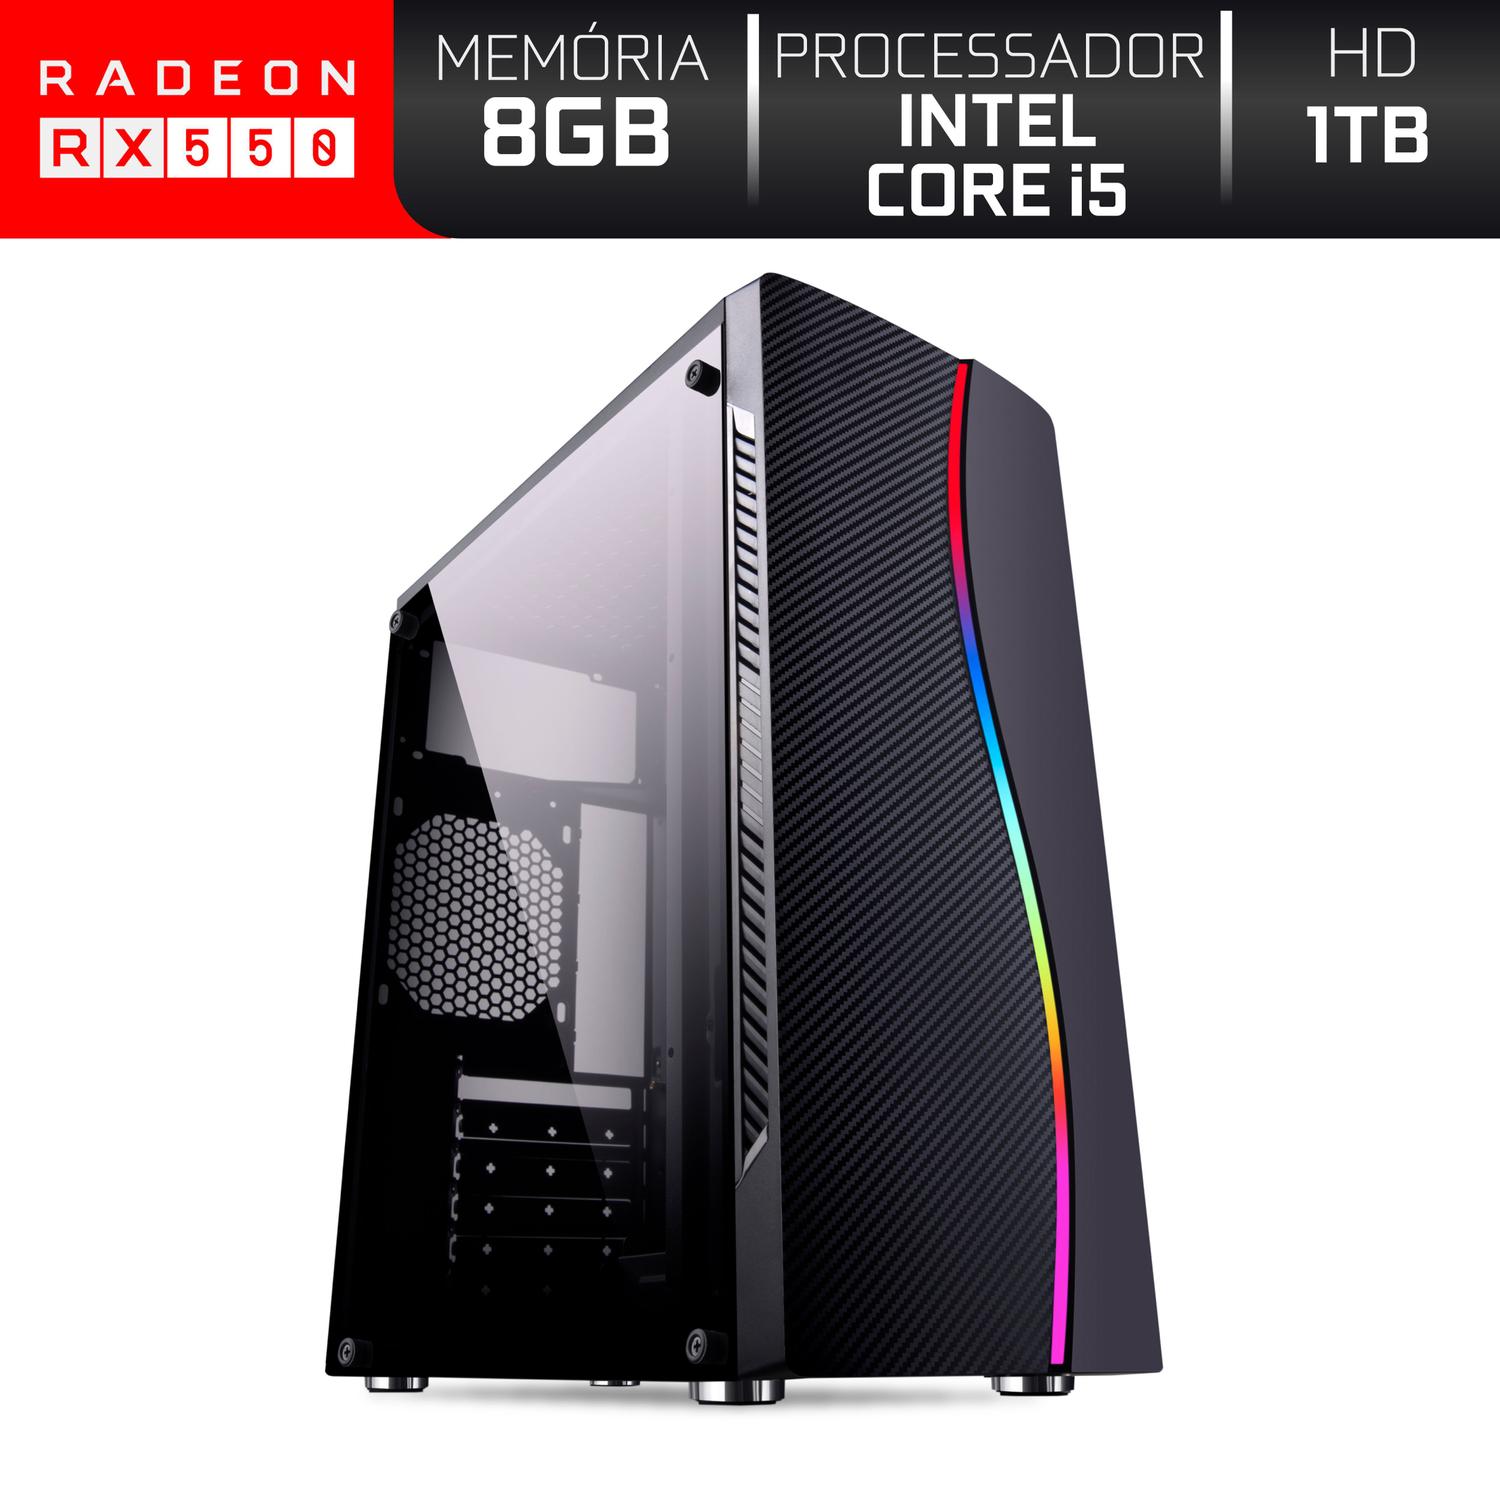 PC Gamer Intel Core i5 RAM 8GB HD 1TB (Radeon RX 550 4GB) 500W 